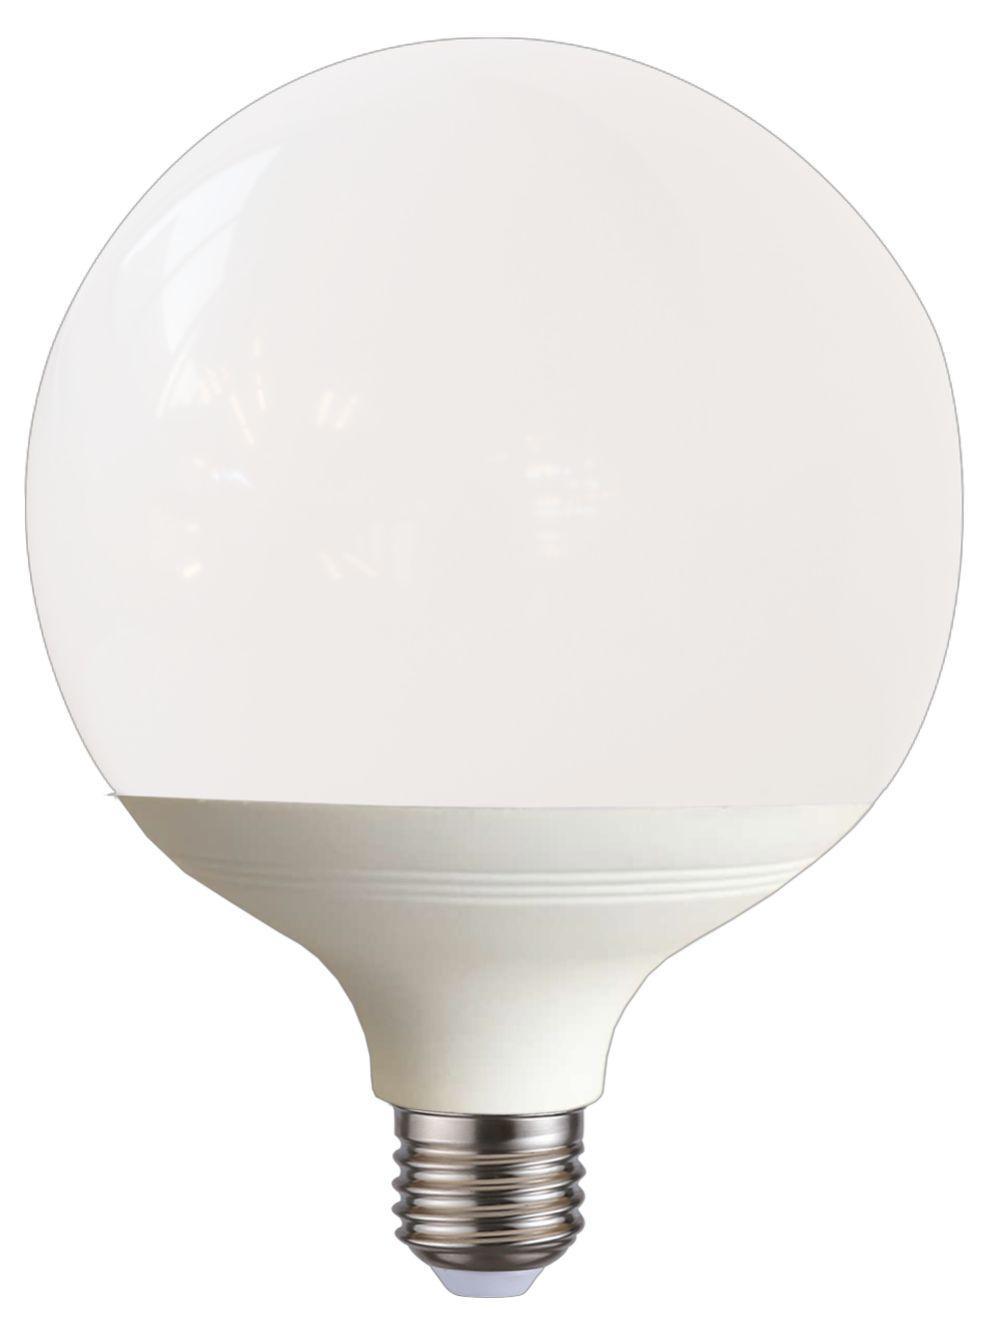 90121239 Лампа Premium светодионая E27 15.50 Вт шар 1240 Лм нейтральный свет STLM-0112410 ECOLA